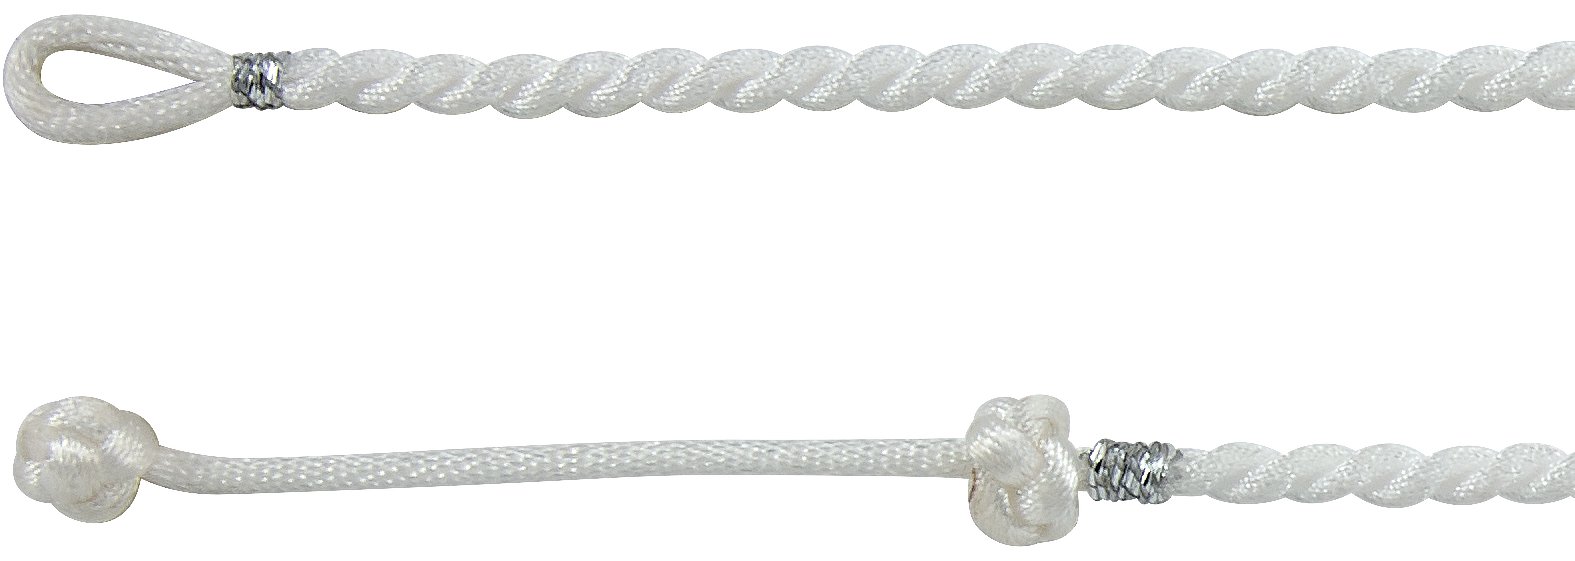 3mm White Satin Twist Necklace 16 to 18 inch Ref 638654